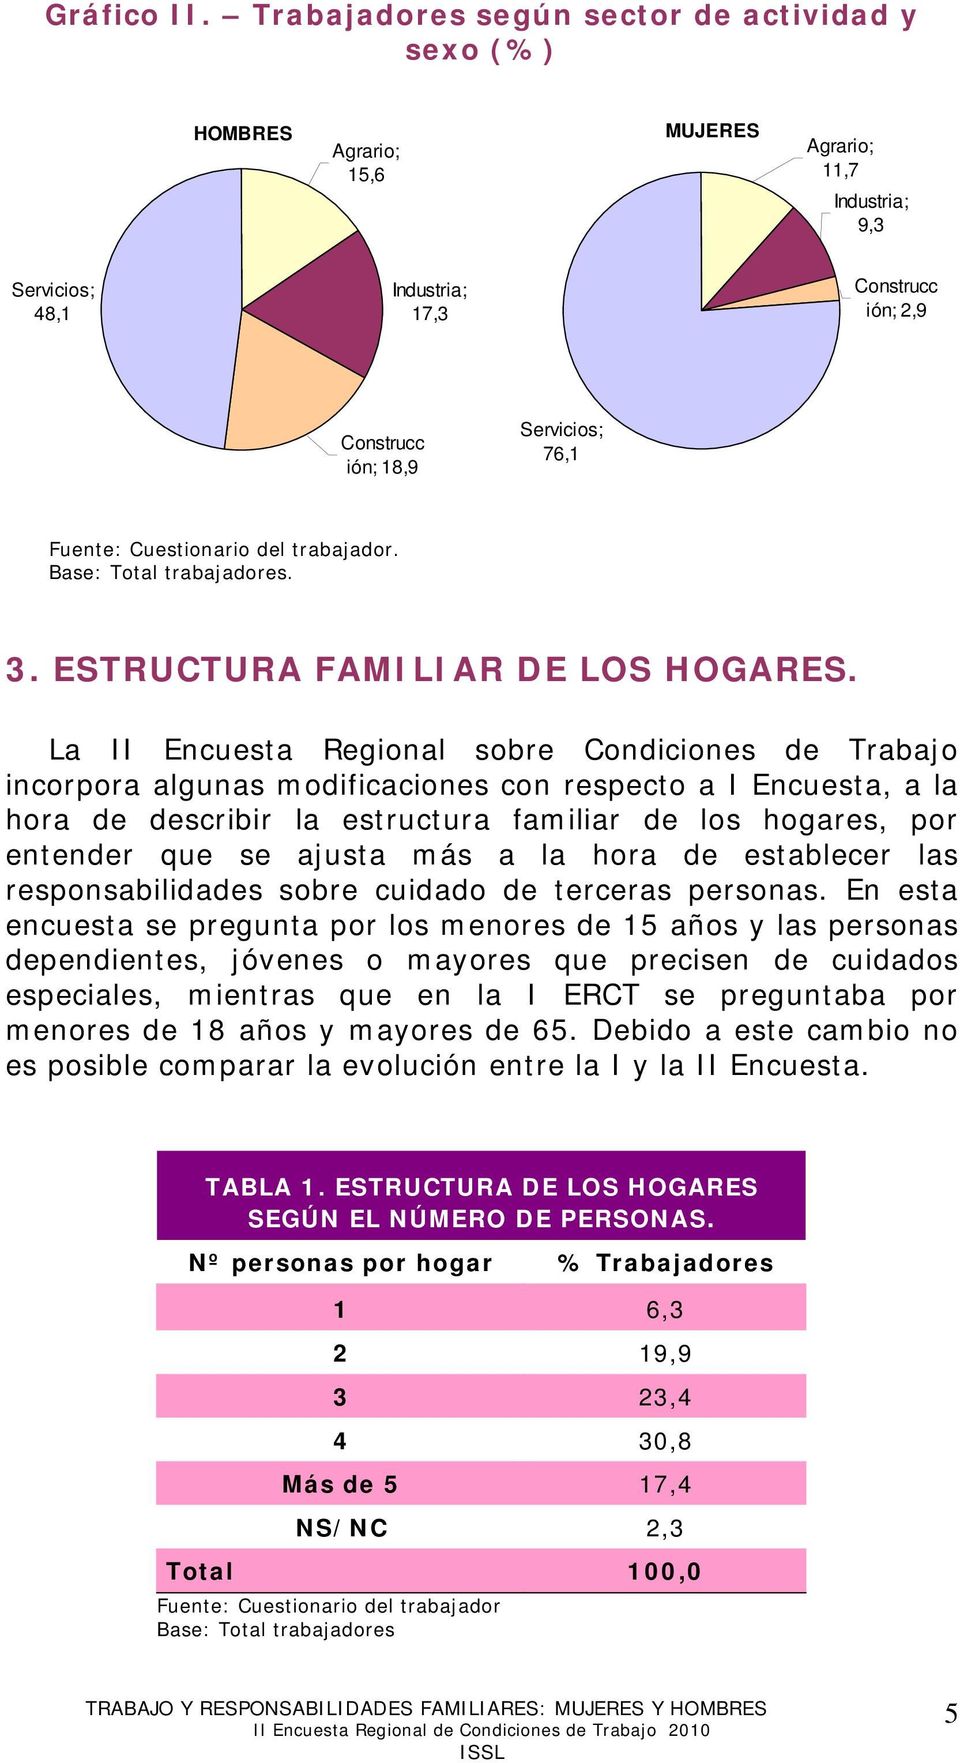 Fuente: Cuestionario del trabajador. Base: Total trabajadores. 3. ESTRUCTURA FAMILIAR DE LOS HOGARES.